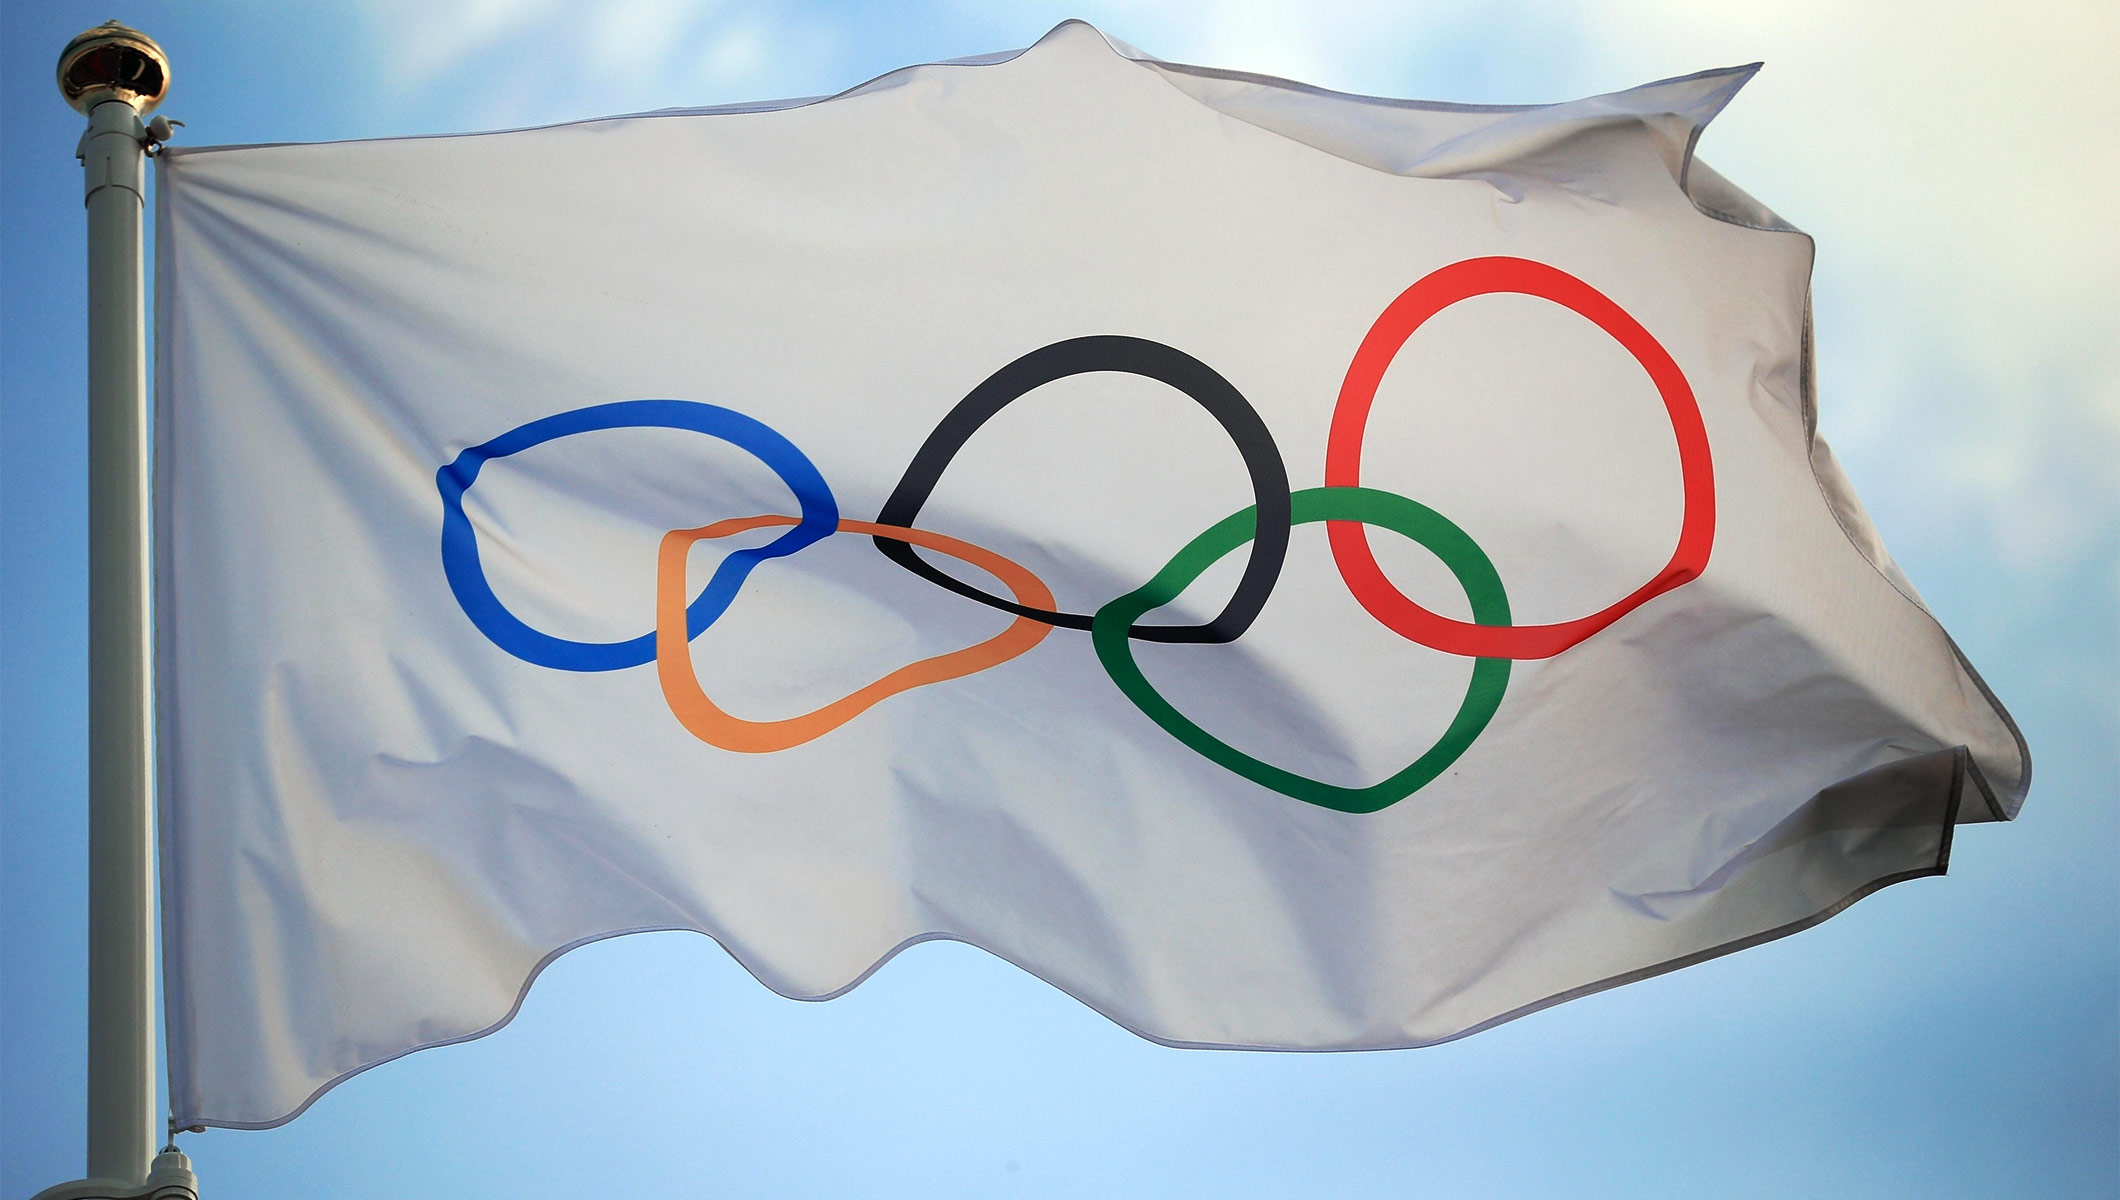 Ολυμπιακοί Αγώνες: Οι αθλητές θα αγωνιστούν με υπεύθυνη δήλωση λόγω κορωνοϊού